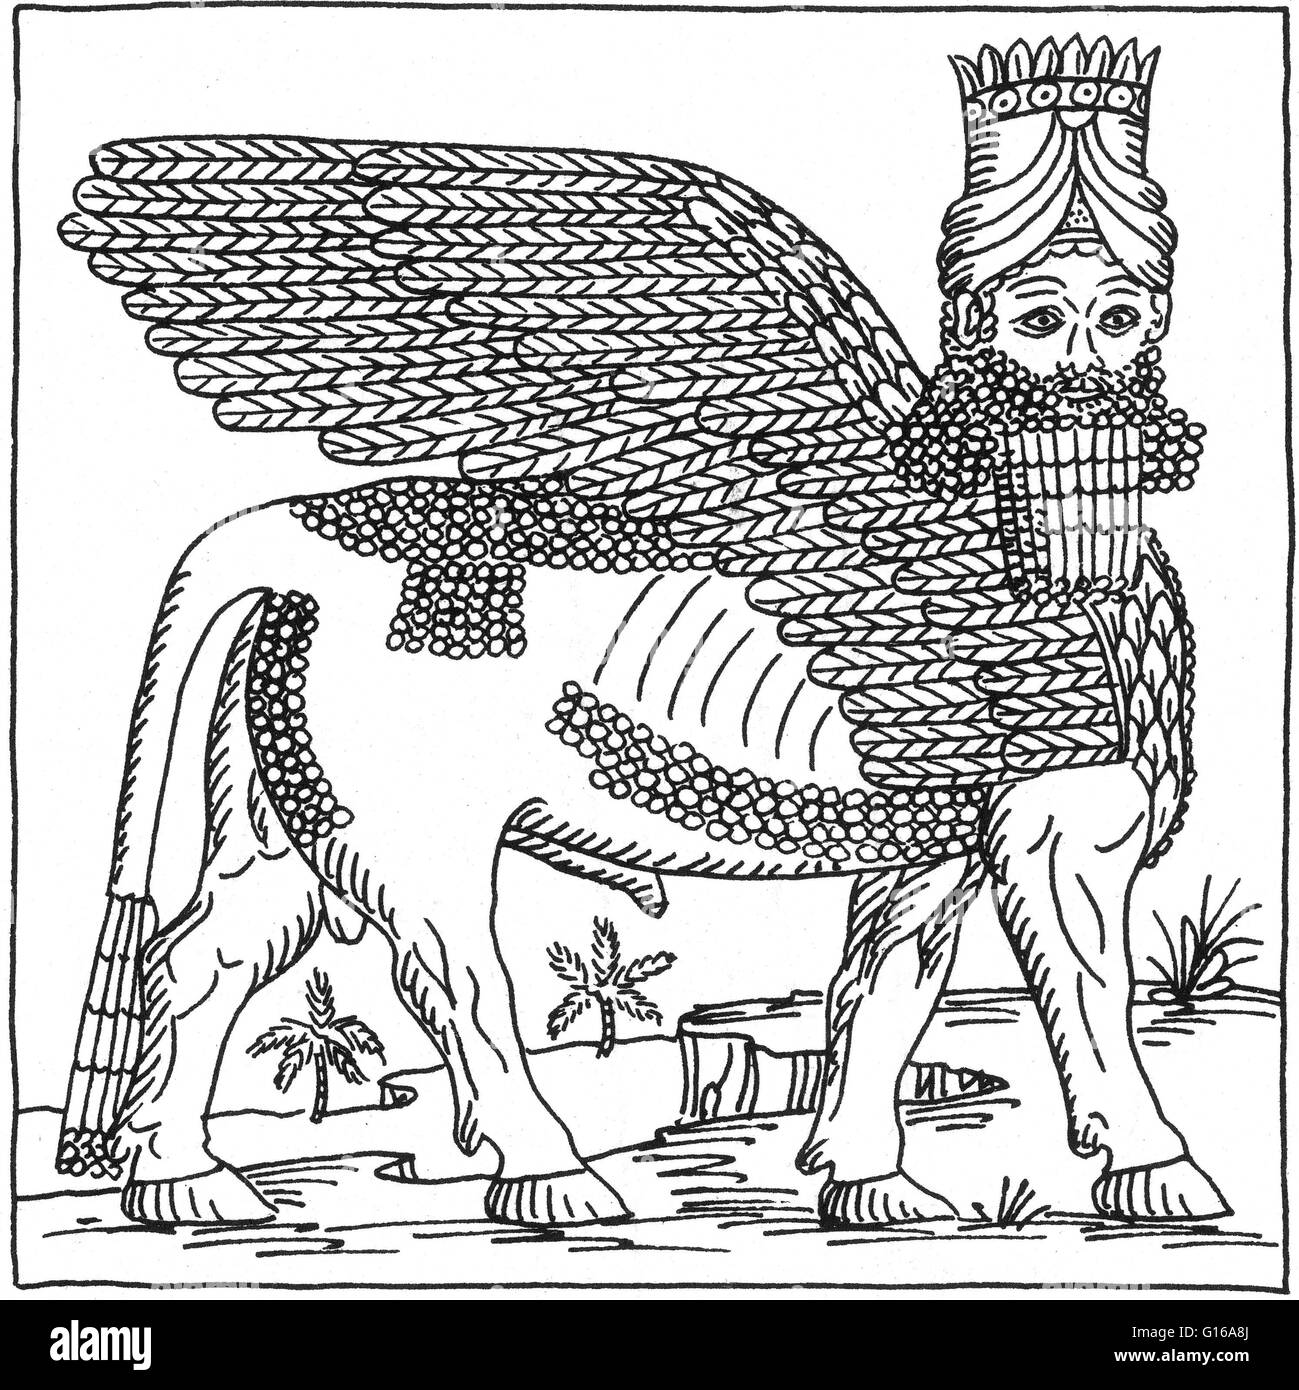 Lamassu è una divinità protettiva. Essi erano raffigurati come ibridi, alato tori e leoni con la testa di un maschio umano. Il cappuccio a corno attesta la loro divinità, e la cinghia significa il loro potere. Essi sono generalmente attribuita agli antichi Assiri. Alth Foto Stock